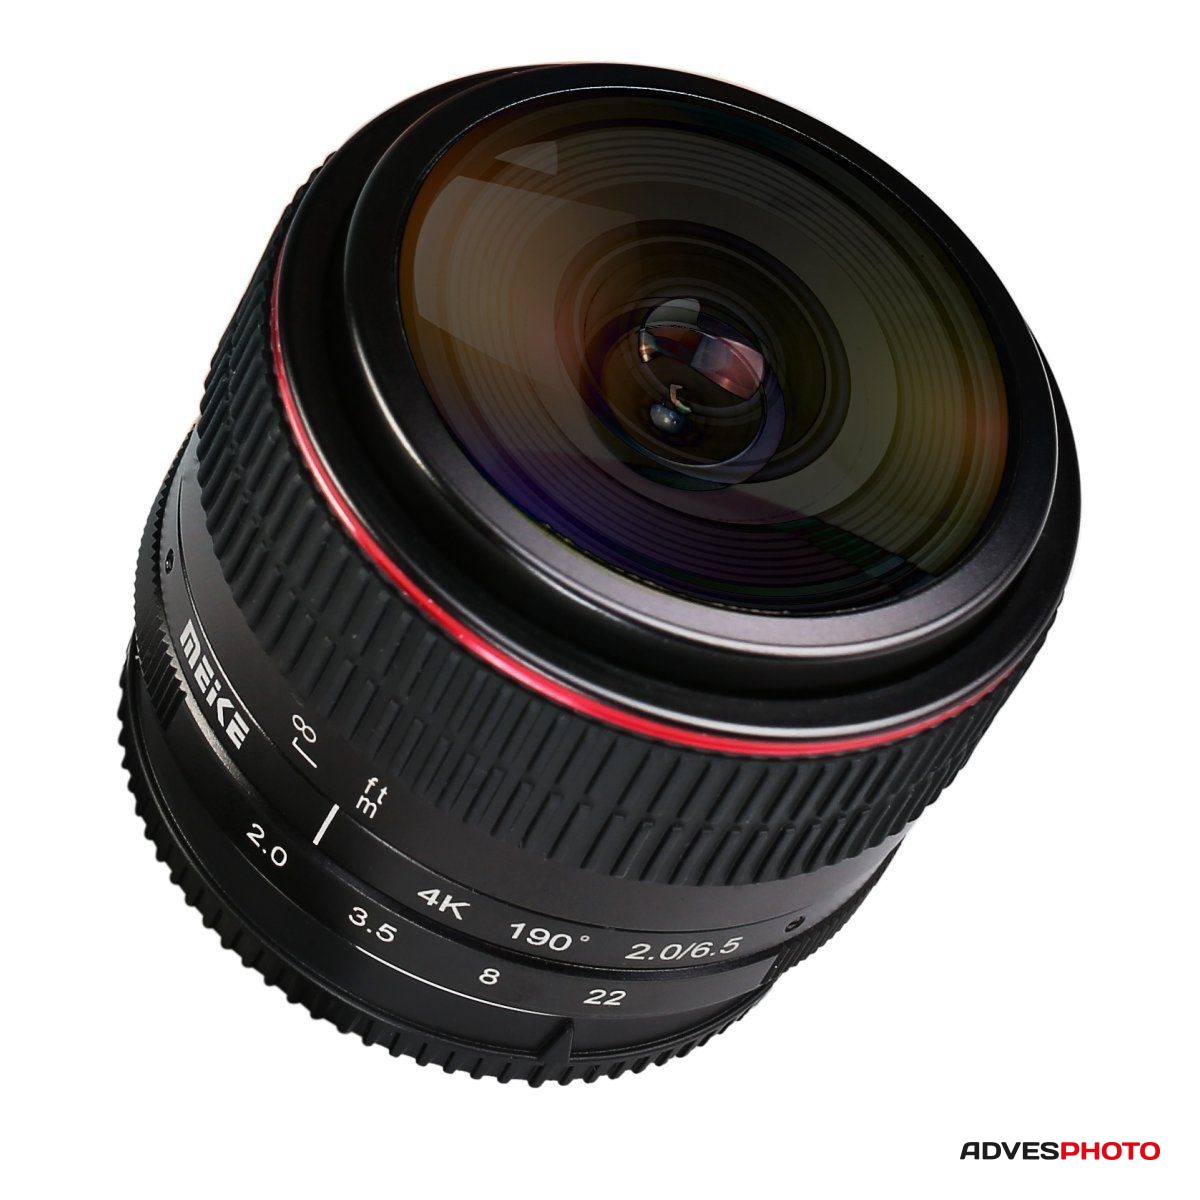 Meike 6,5mm f / 2.0 halszem objektív Olympus M4/3-mount tükör nélküli fényképezőgéphez